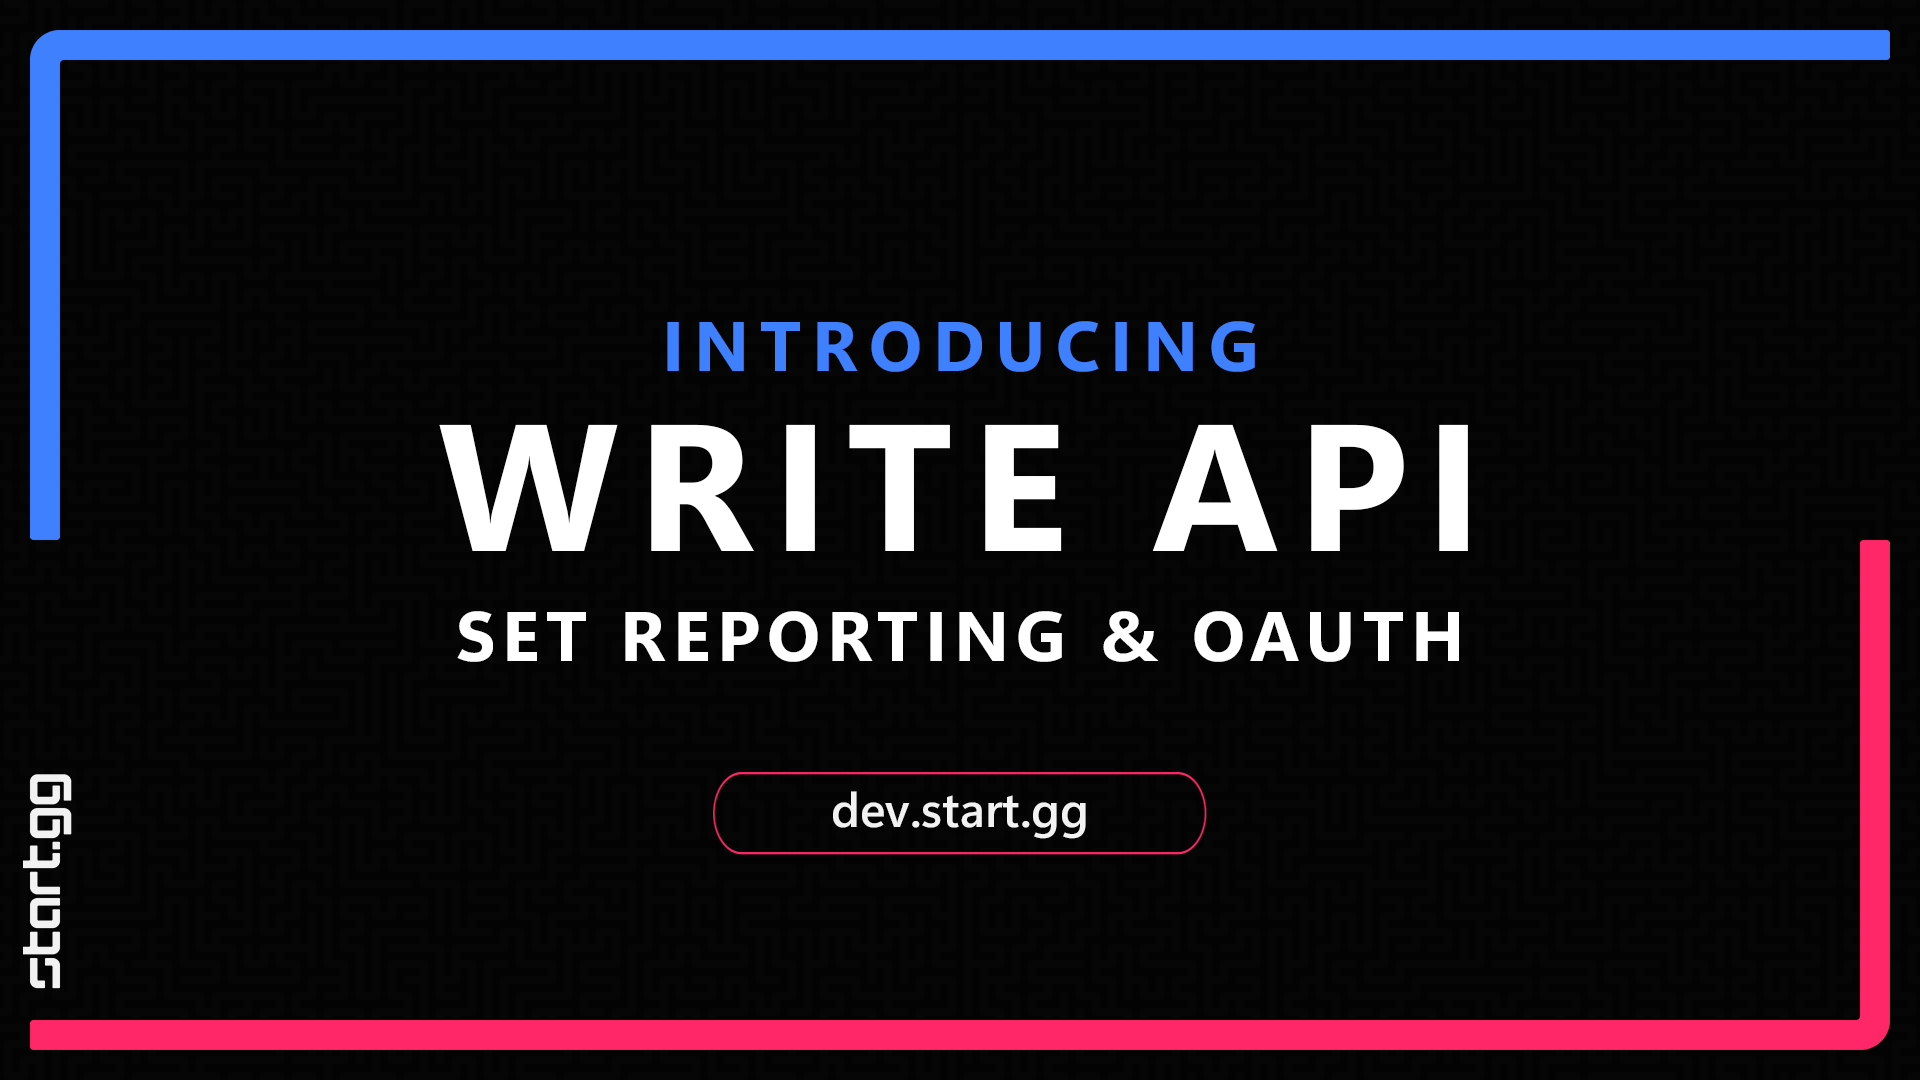 Major Tournament Hosting Platform Start.gg Unveils New Write API